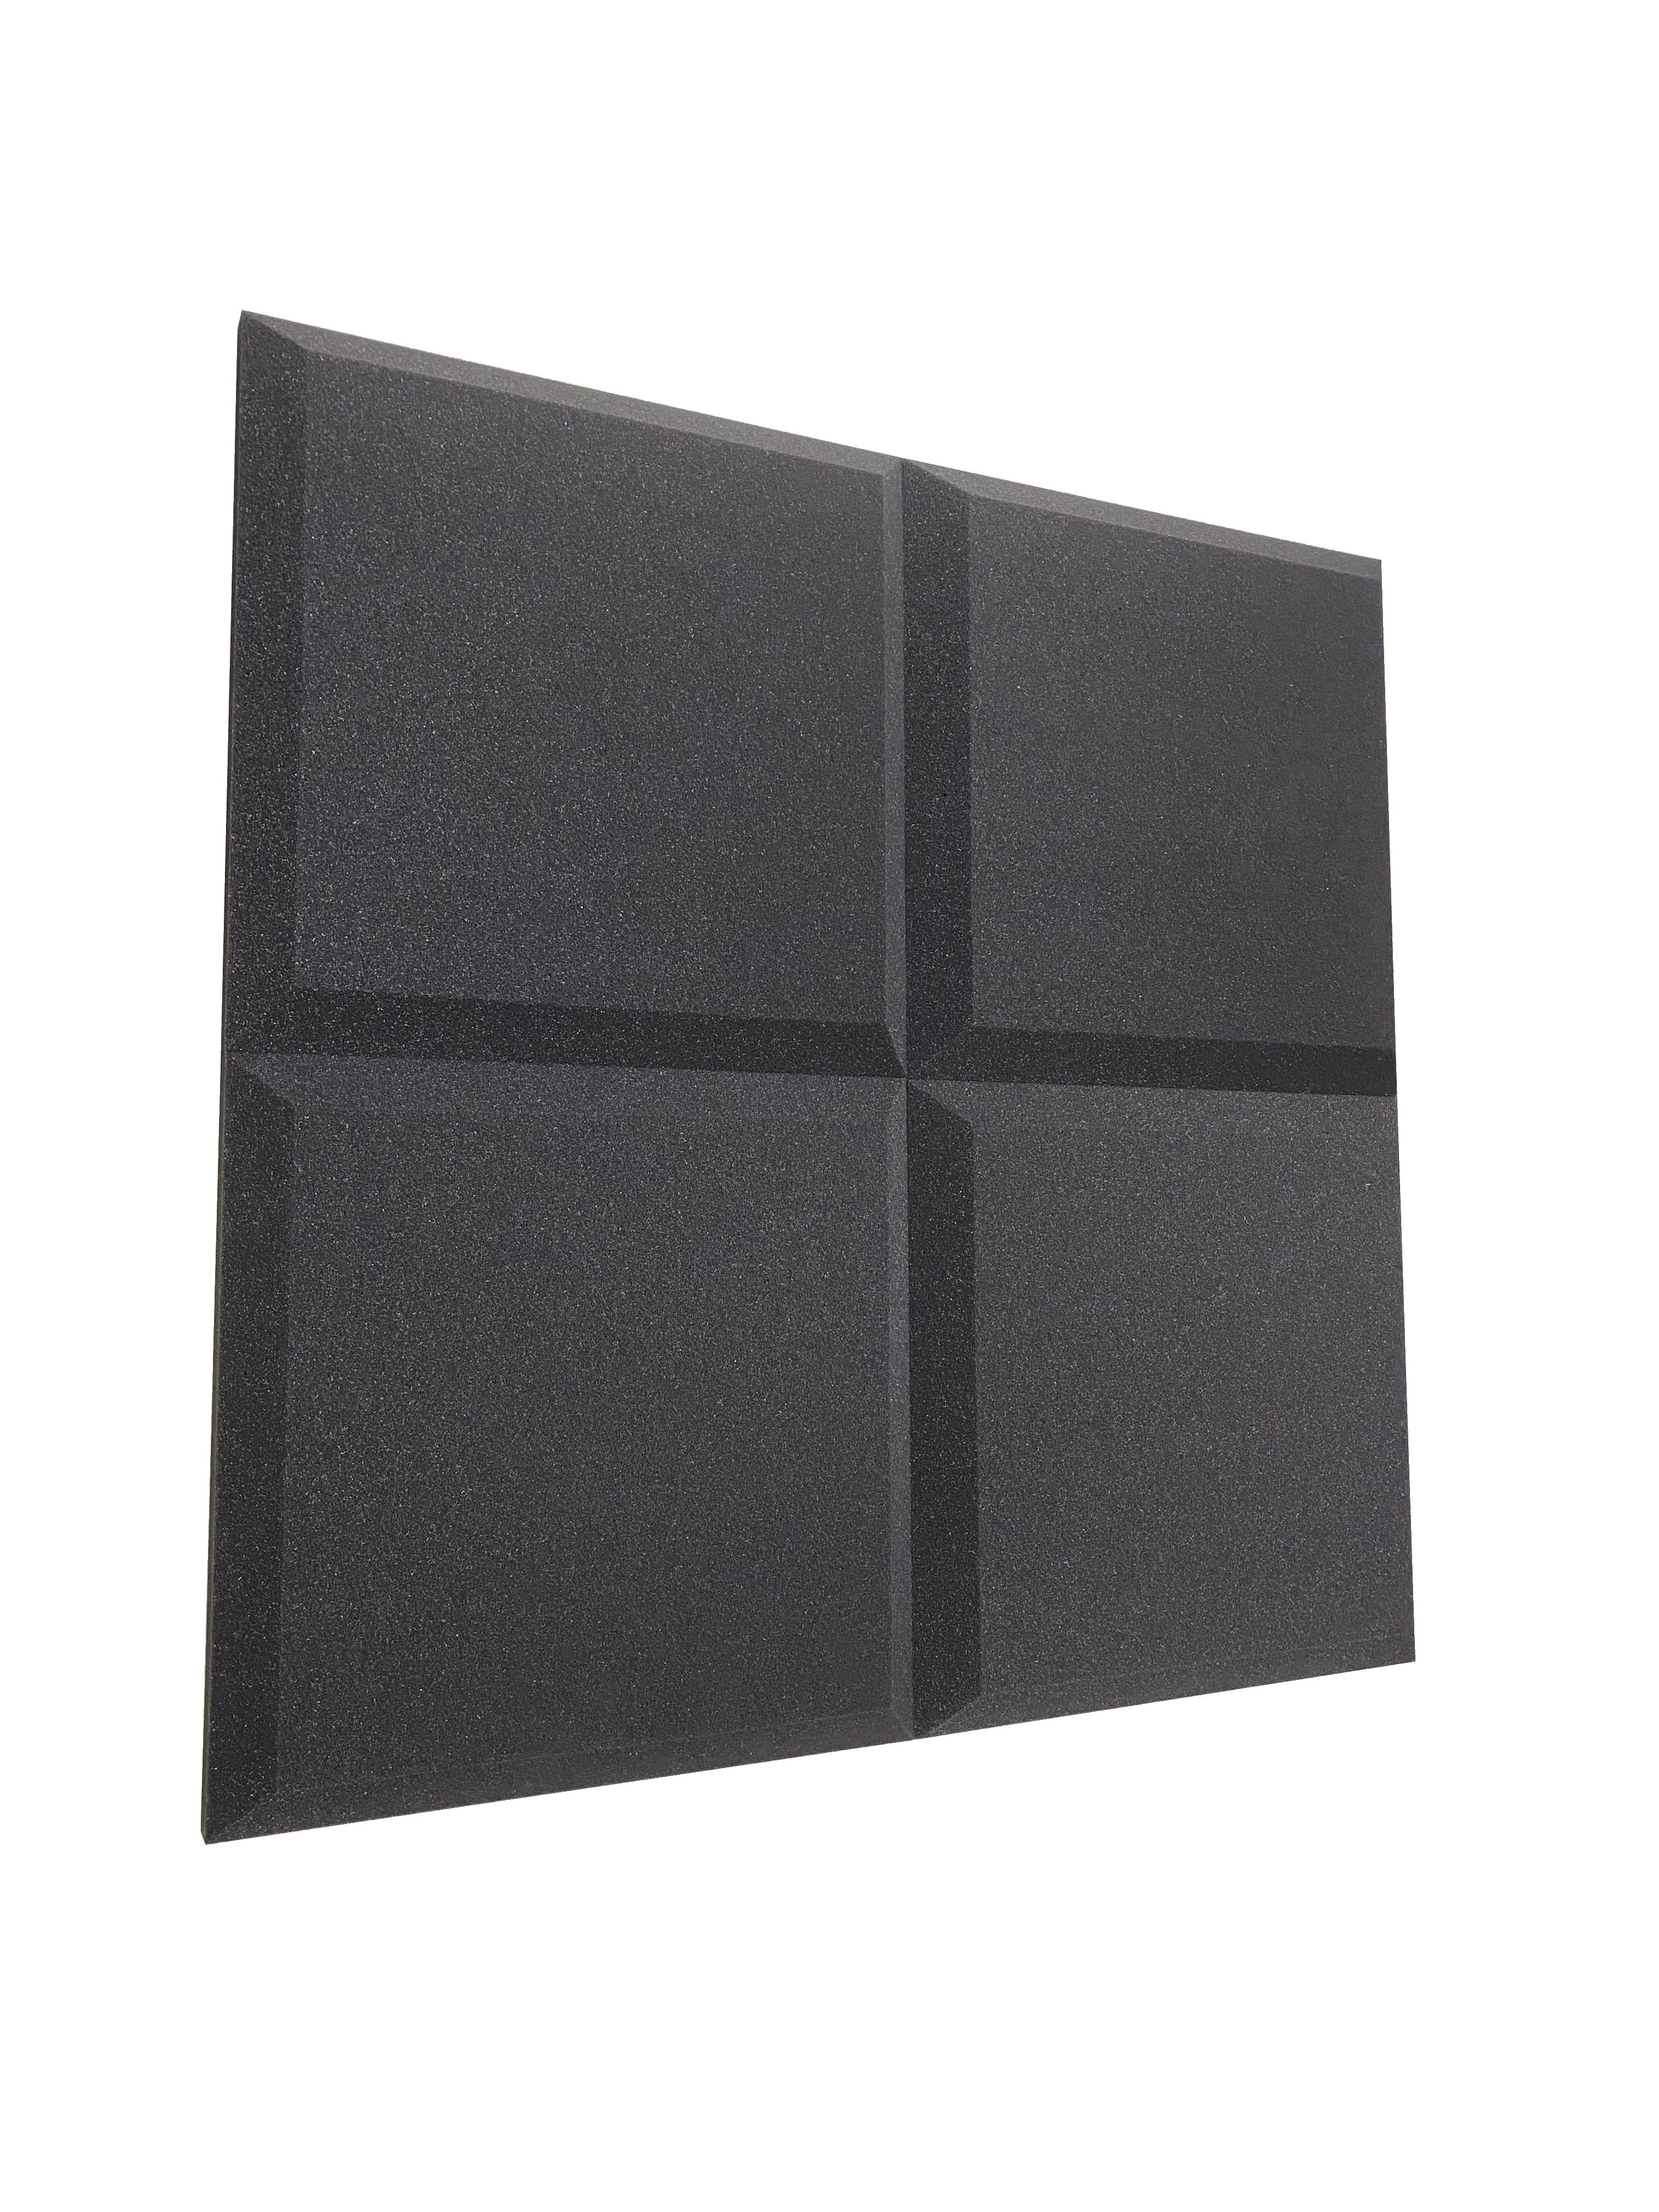 Tegular 2" Acoustic Studio Foam Tile Pack